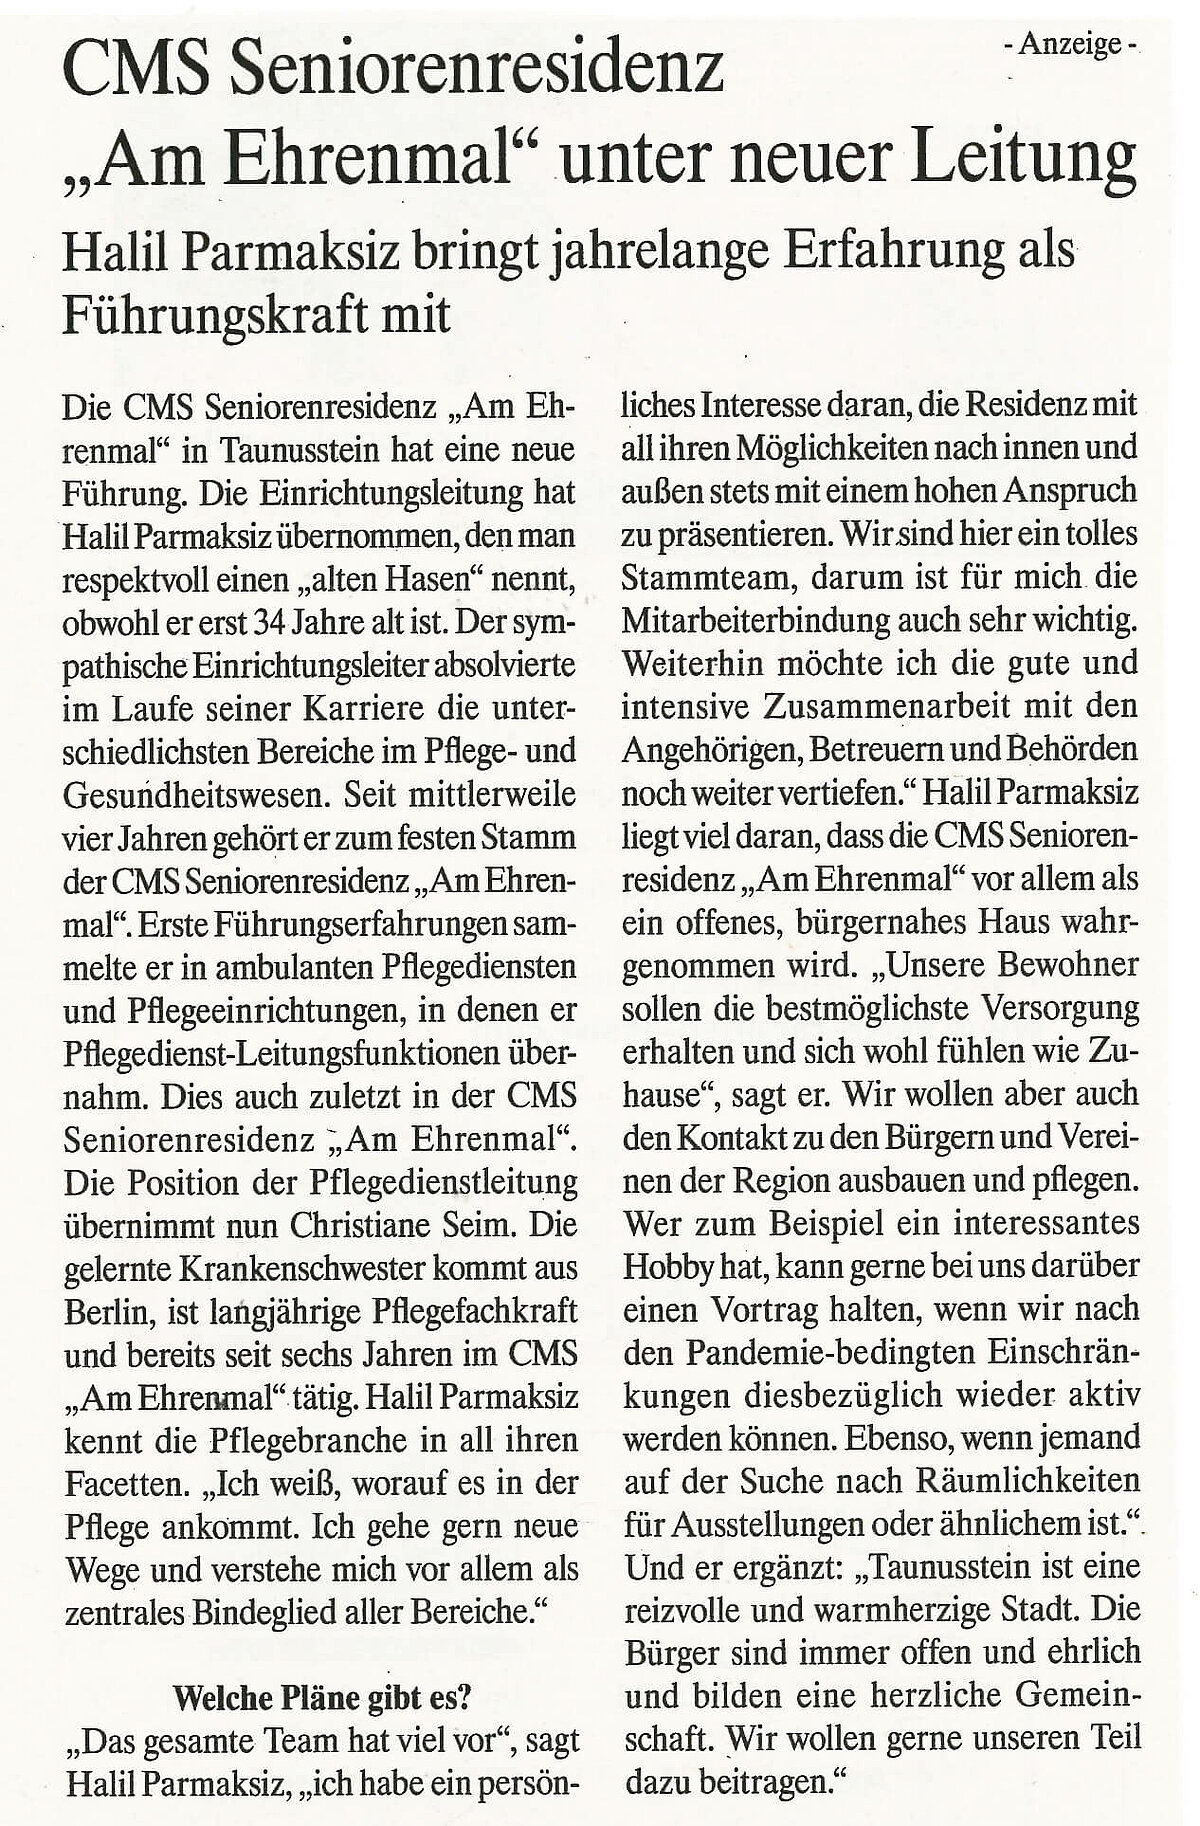 Zeitungsartikel über die Einrichtungsleitung der CMS Seniorenresidenz "Am Ehrenmal" in Taunusstein